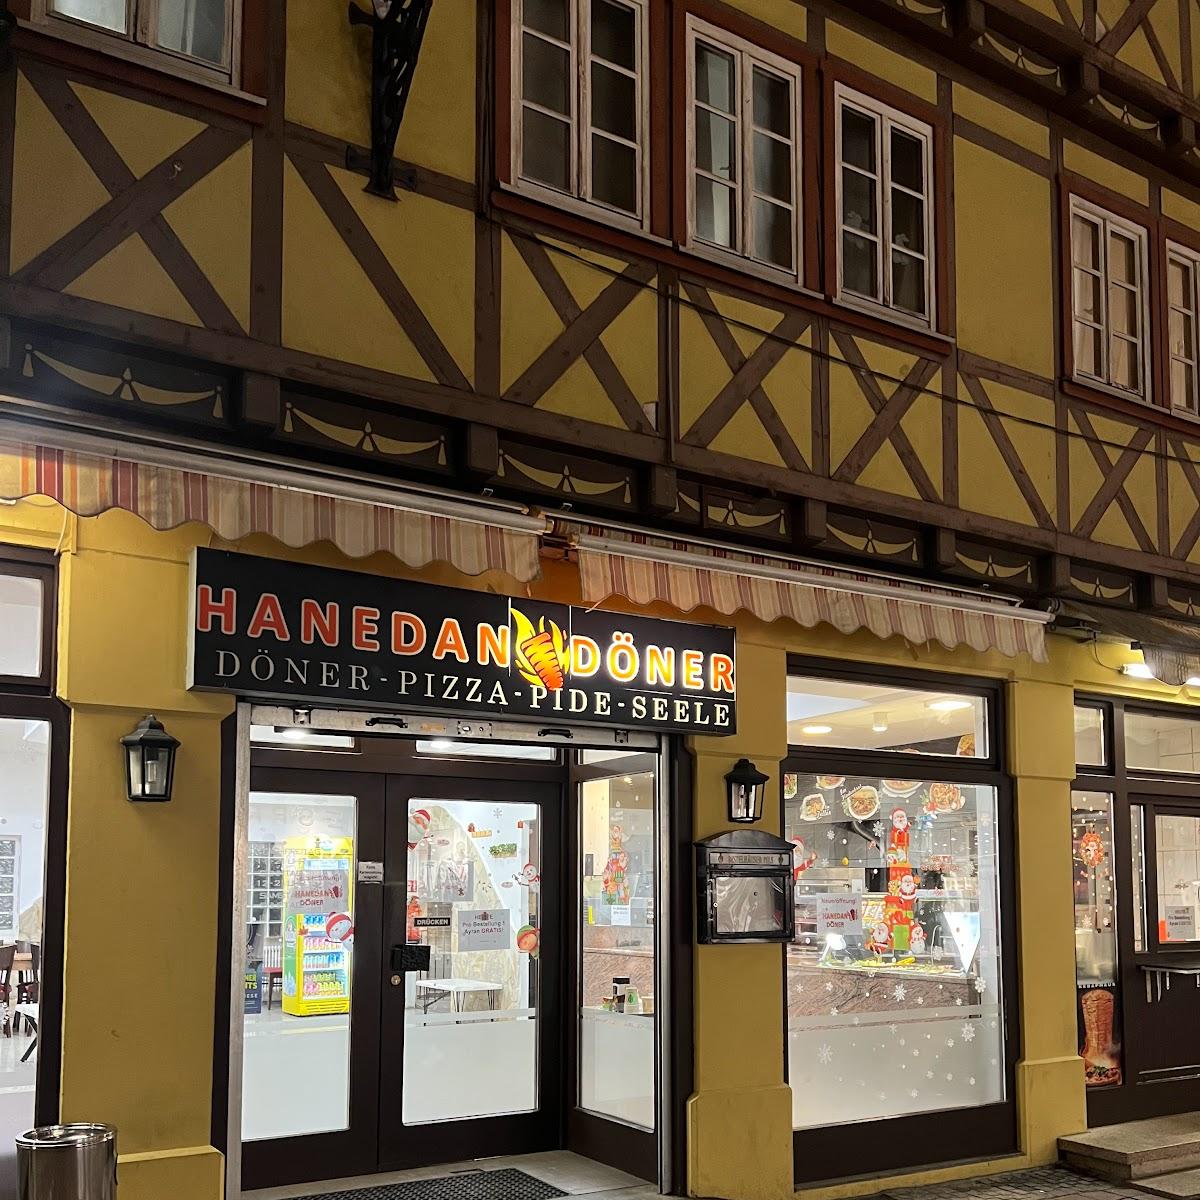 Restaurant "Hanedan Döner" in Buchen